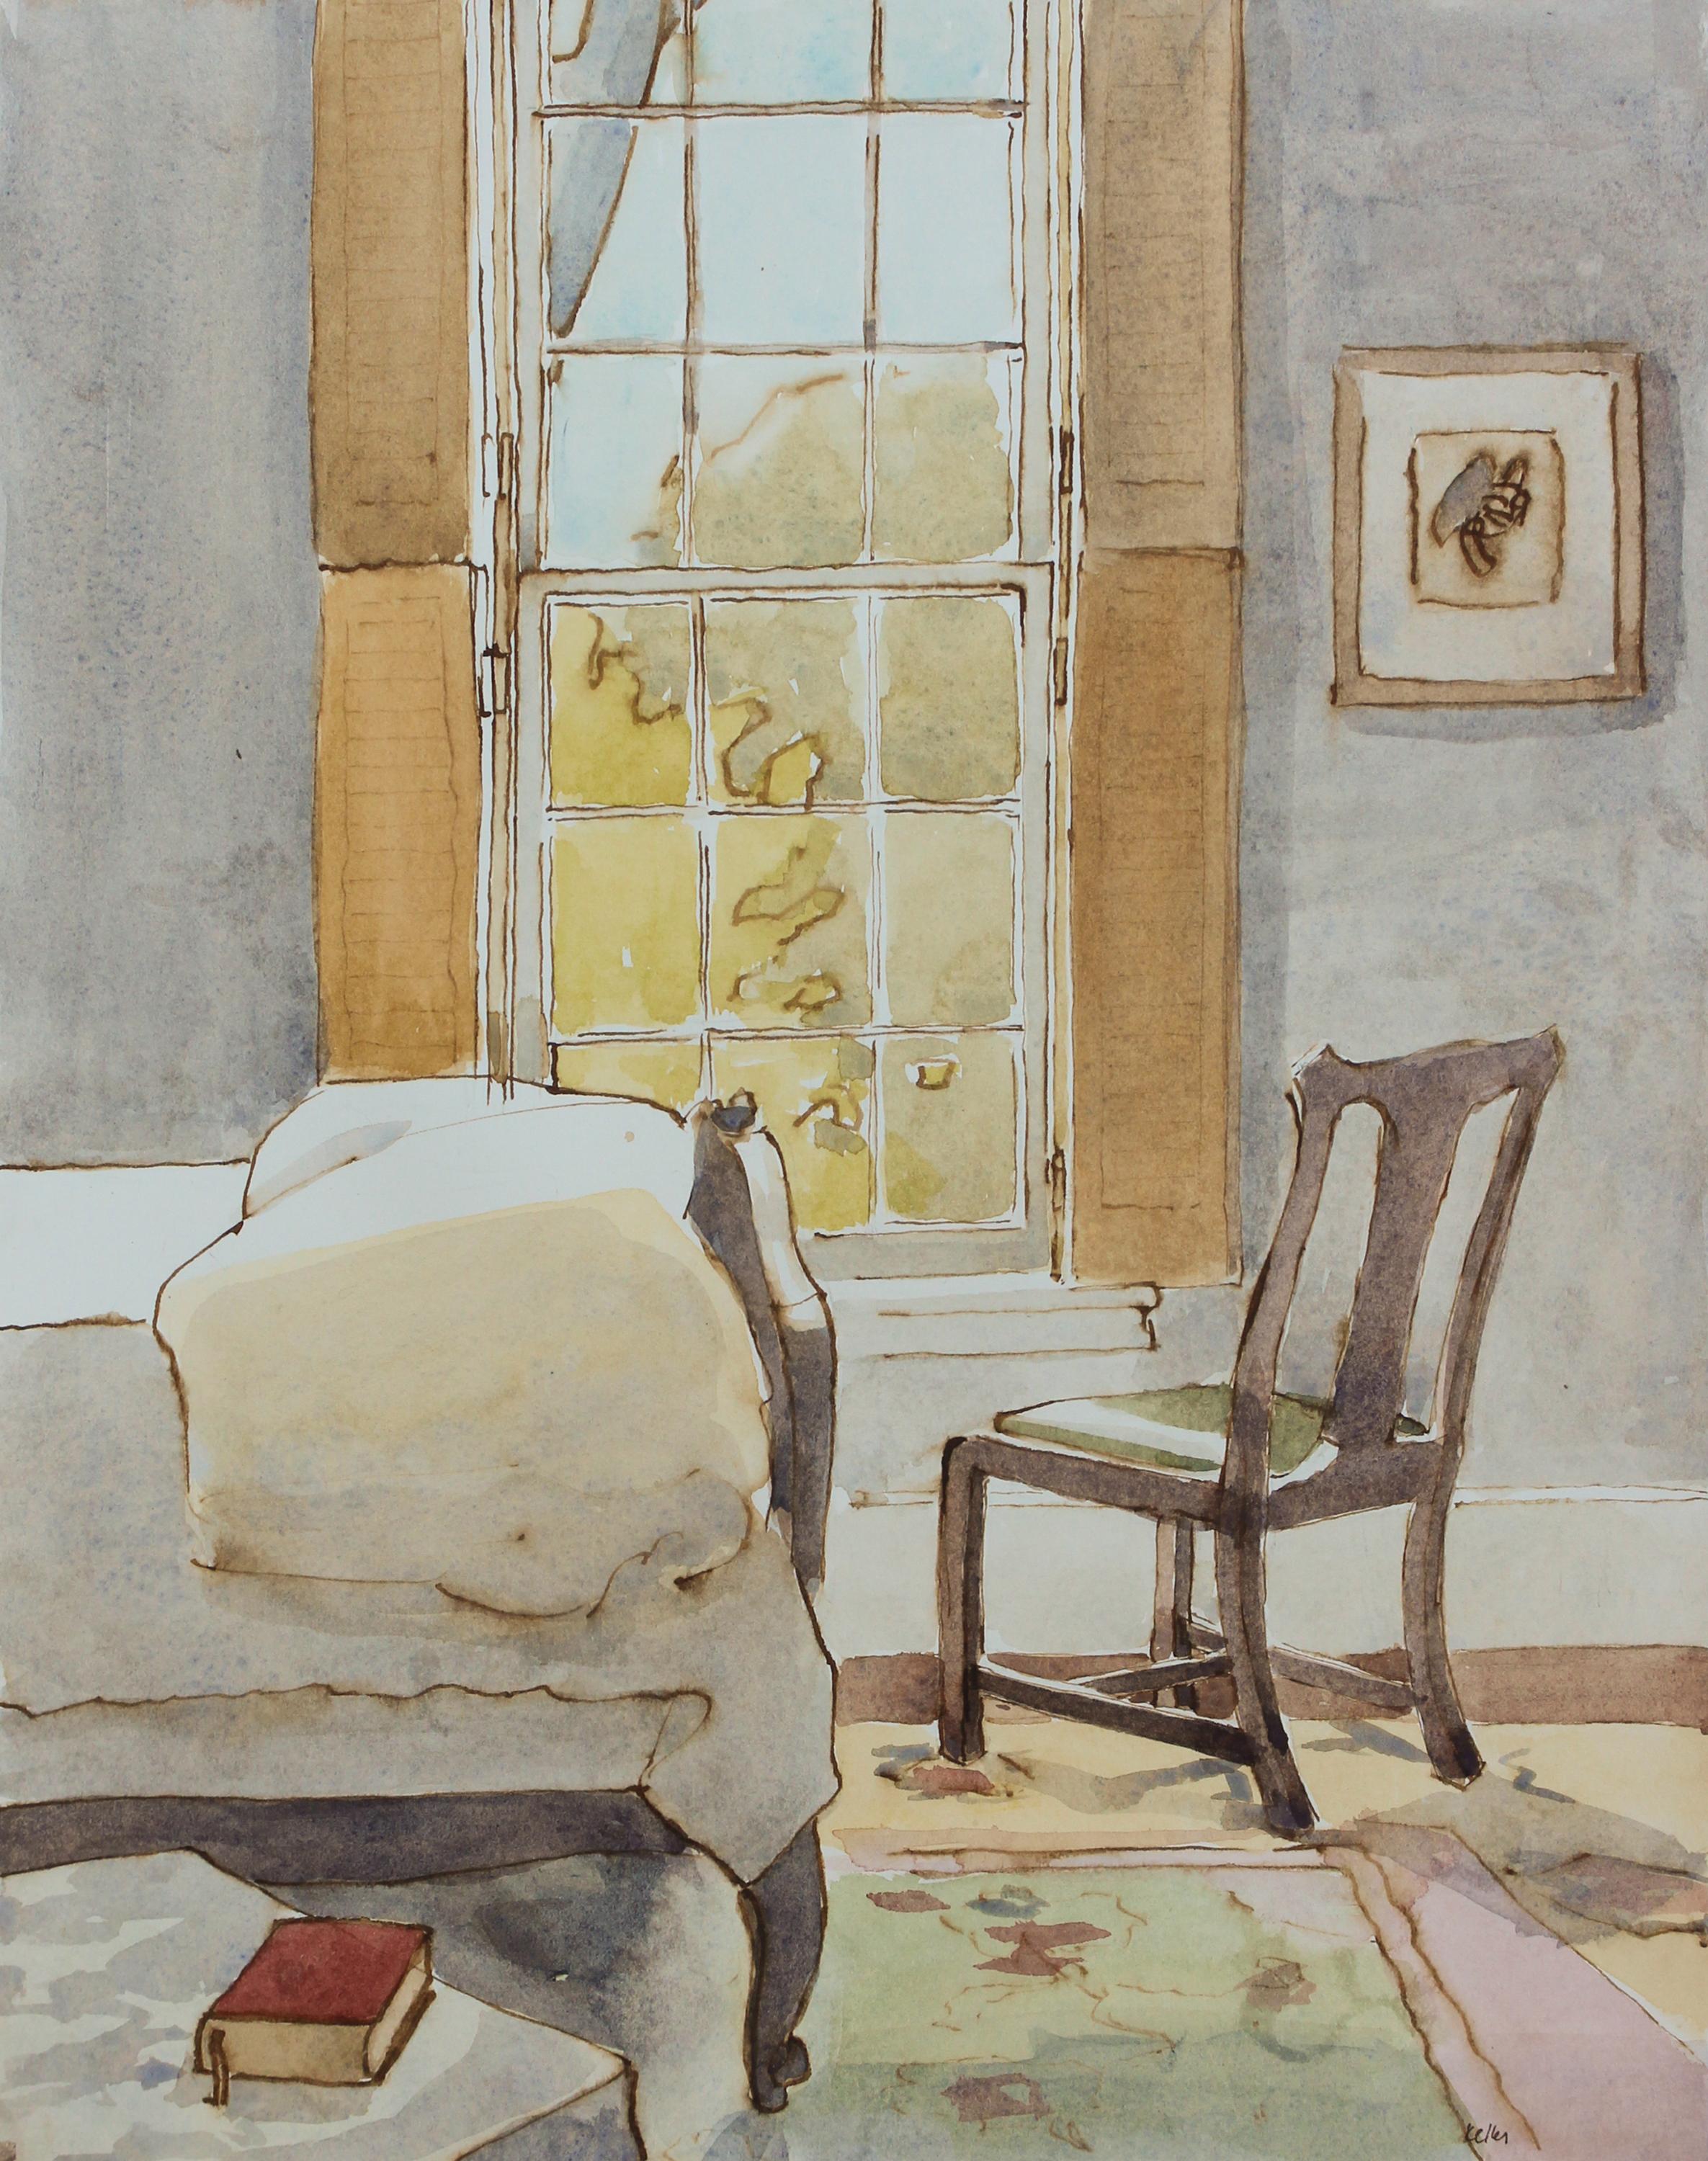 'Bleak House 4-26-2021' - interior watercolor - work on paper - Giorgio Morandi 